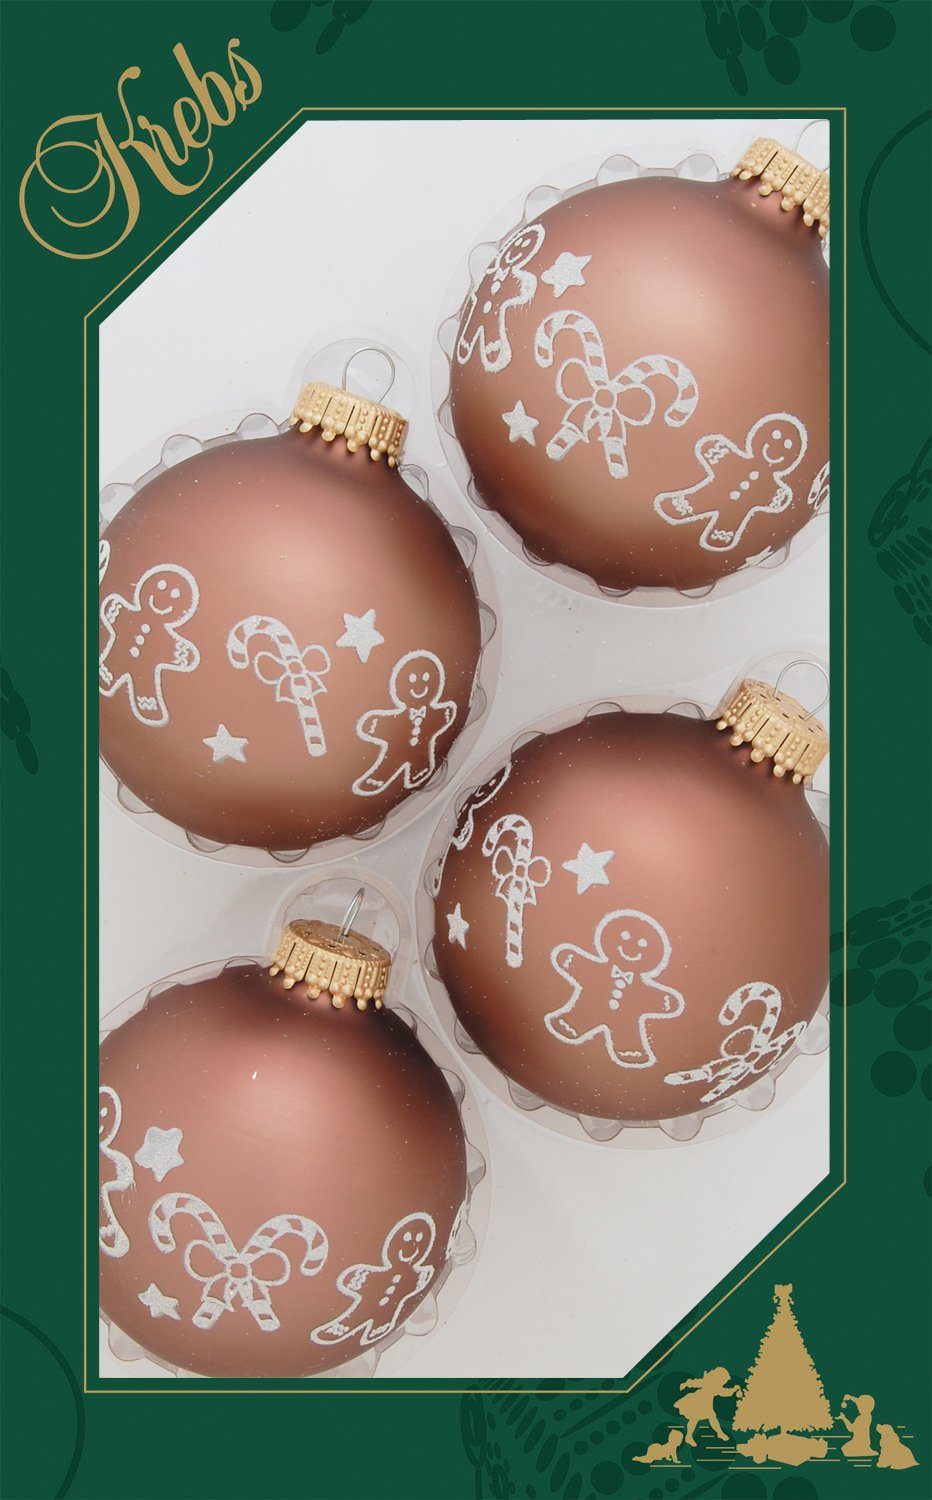 Christbaumkugeln mit Glas, Christbaumschmuck, Weihnachtsbaumkugel St), Glas Weihnachtsdeko, Krebs aus Lauscha CBK00046, (4 Weihnachts-Motiv Glas